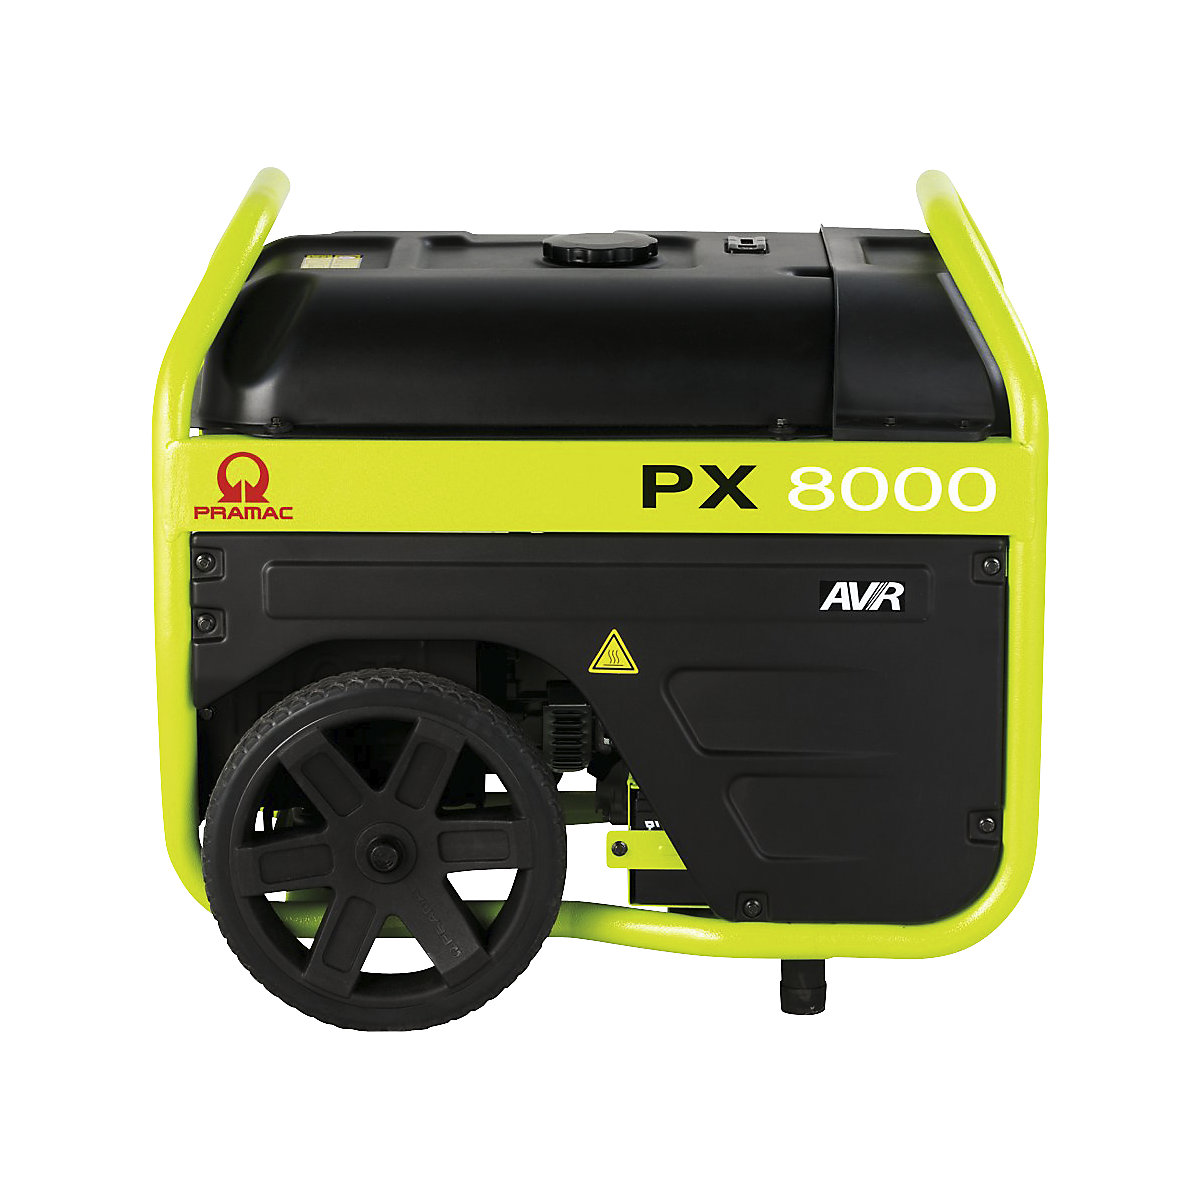 Agregat prądotwórczy serii PX – Pramac, PX 8000 AVR, benzyna, 230/400 V, moc 4,0 kW, 1,3 / 4,0 kW